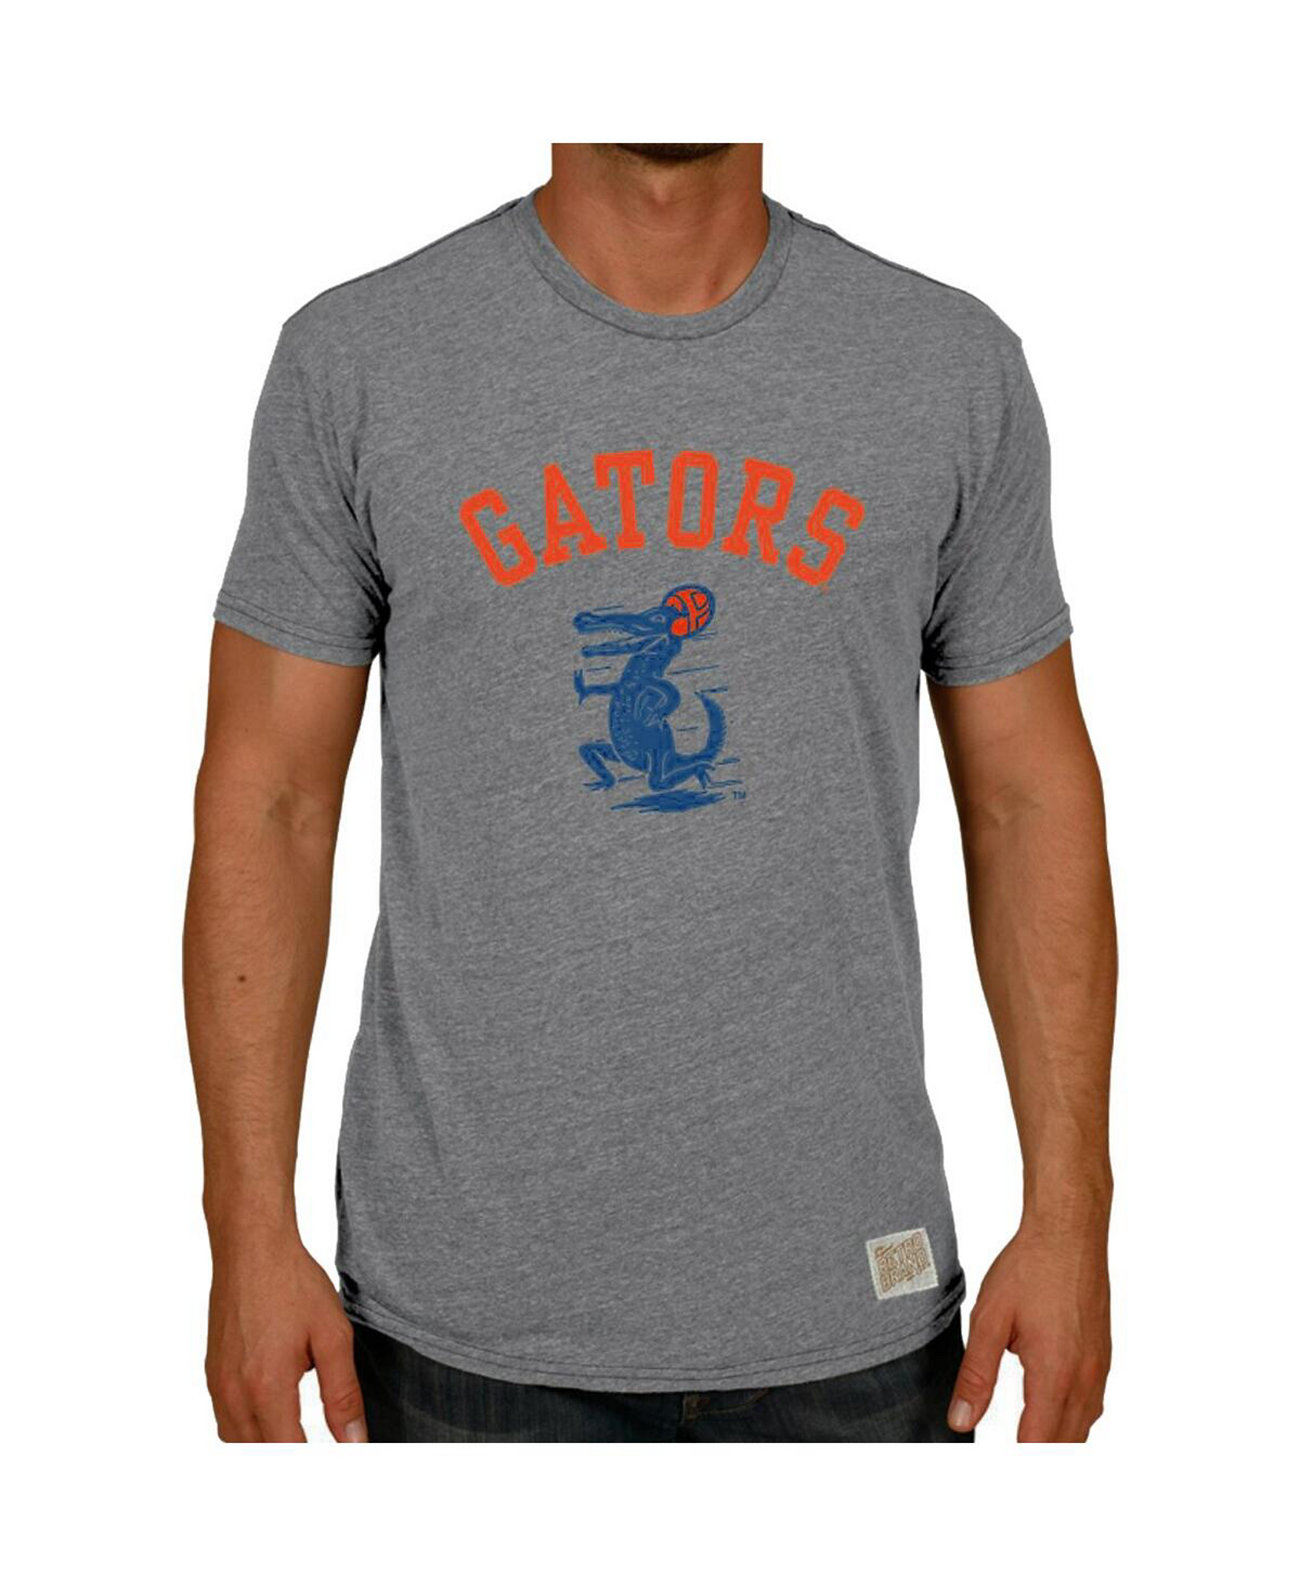 Мужская футболка цвета три-смеси Heather Grey Florida Gators в винтажном стиле Football Gator Original Retro Brand